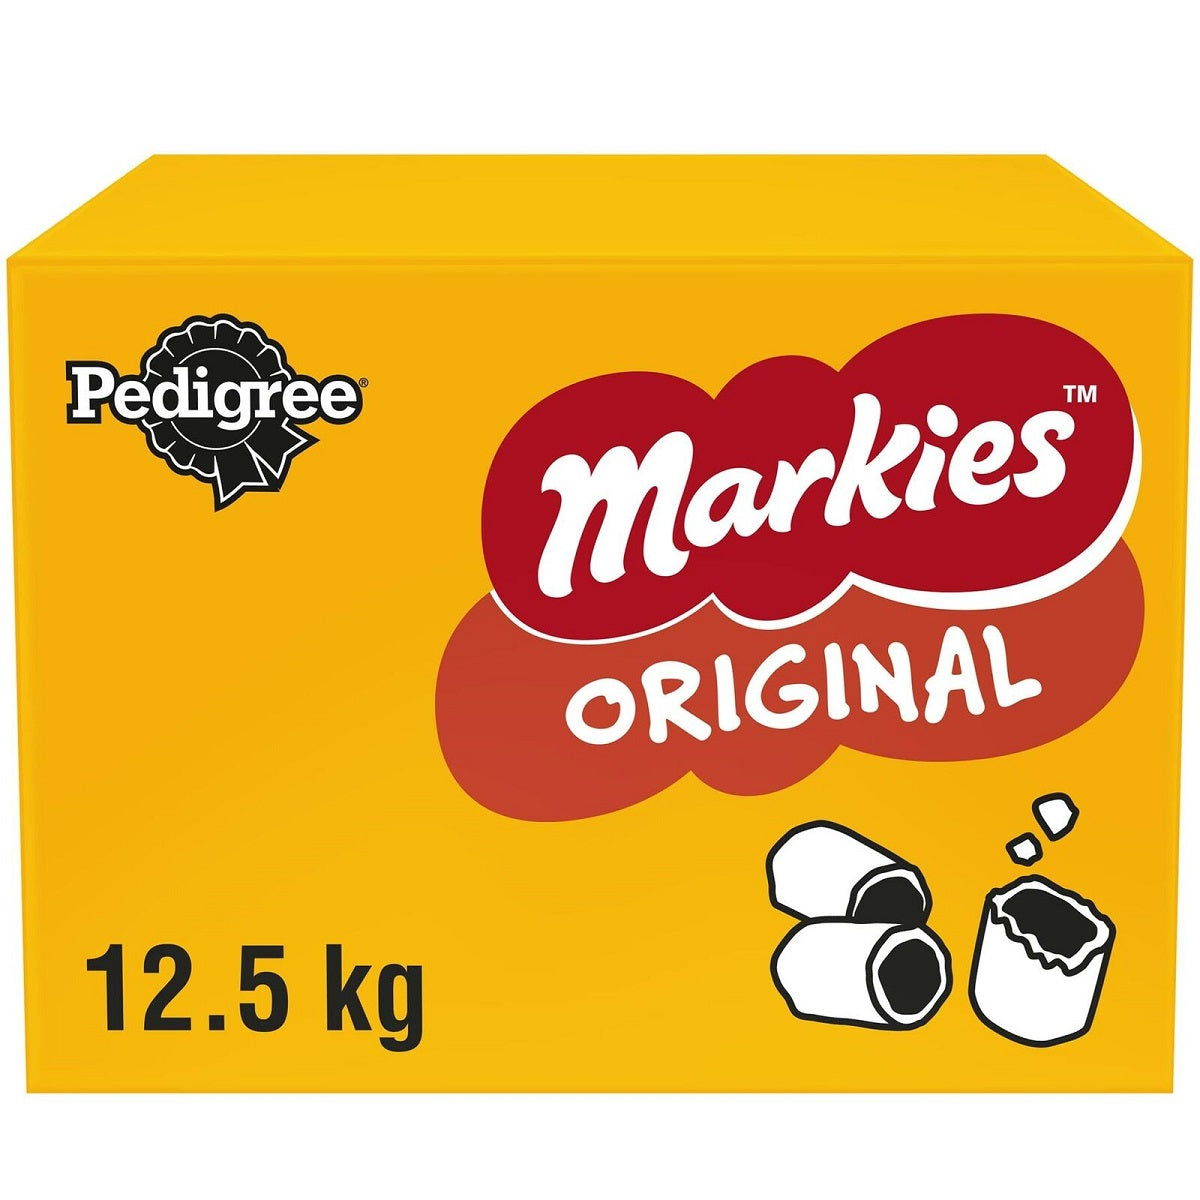 Pedigree - Markies Original